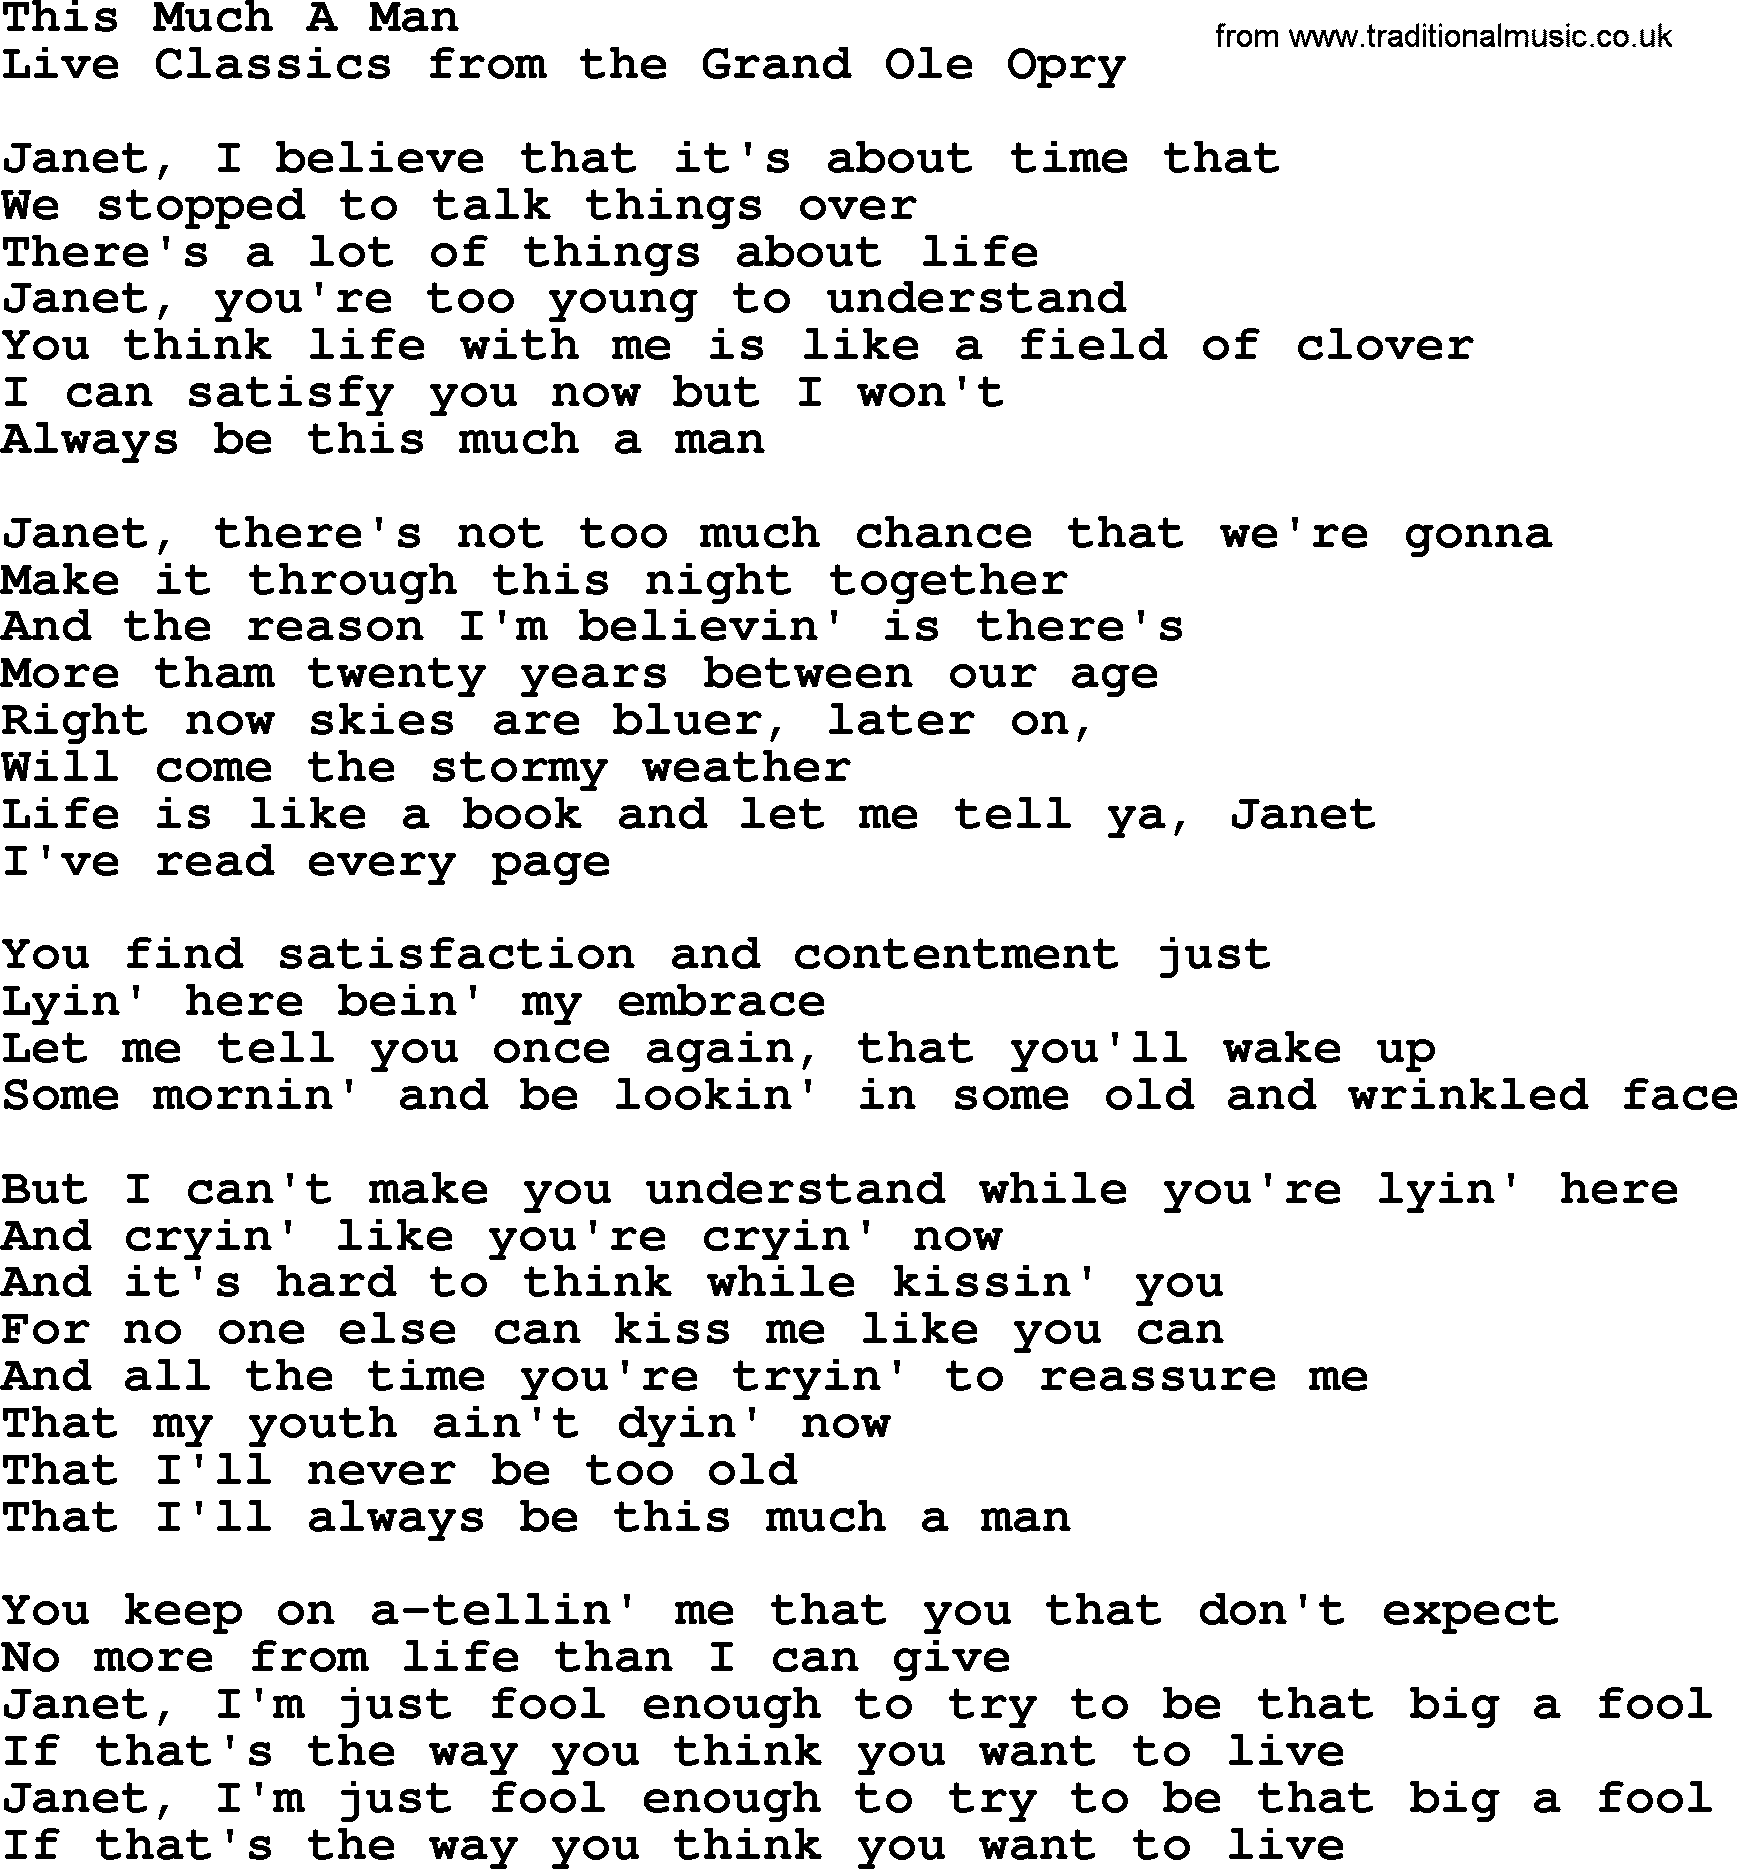 This Much A Man, by Marty Robbins - lyrics